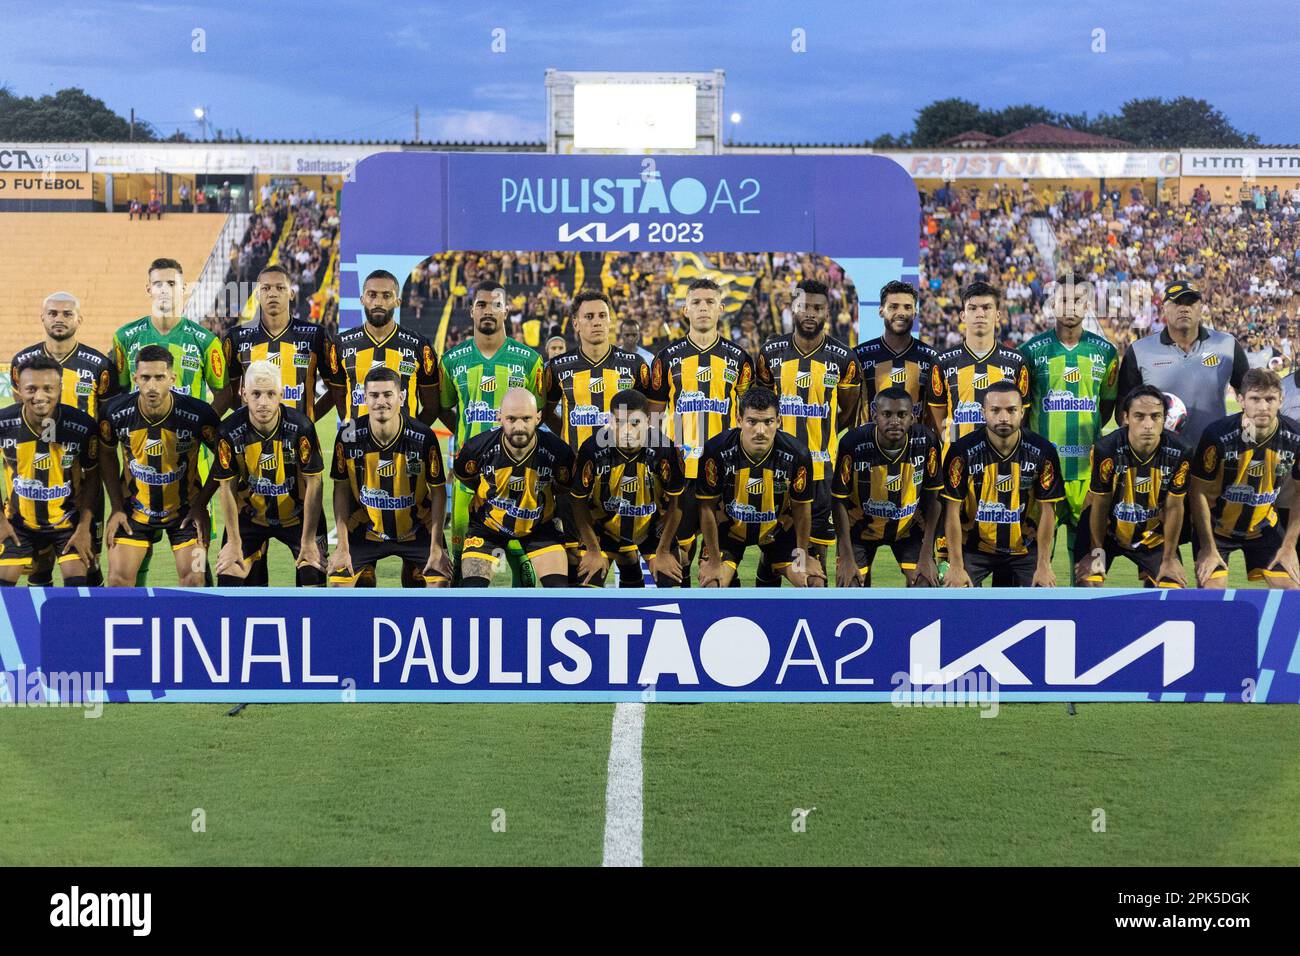 America MG vs Santos: A Clash of Titans in Brazilian Football